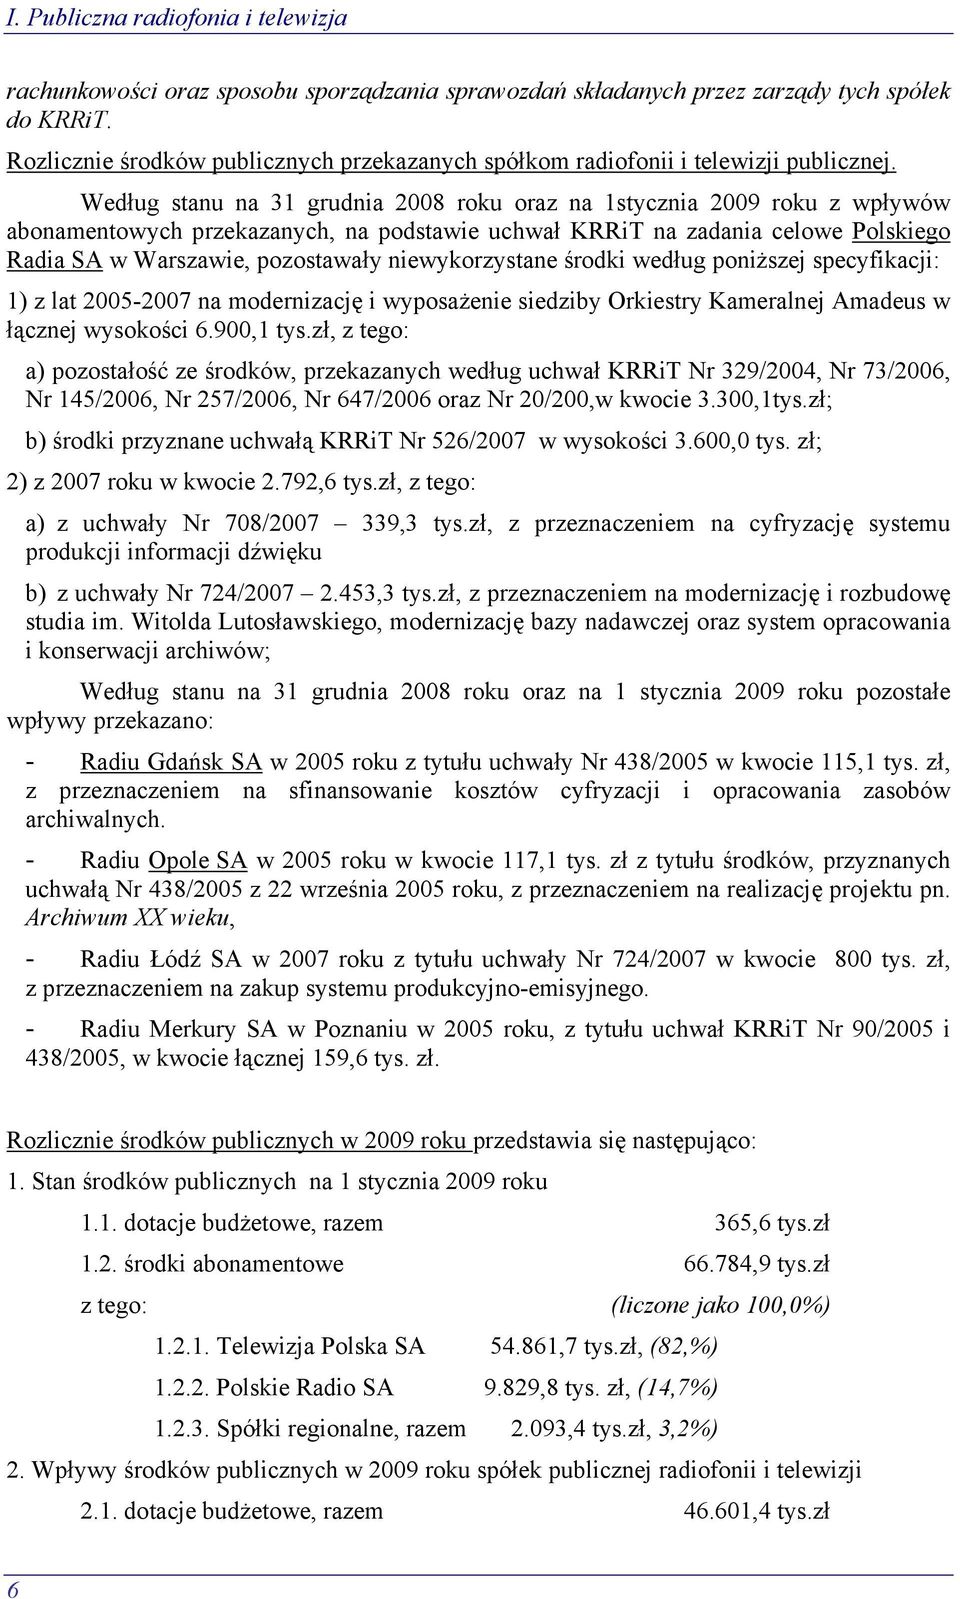 Według stanu na 31 grudnia 2008 roku oraz na 1stycznia 2009 roku z wpływów abonamentowych przekazanych, na podstawie uchwał KRRiT na zadania celowe Polskiego Radia SA w Warszawie, pozostawały